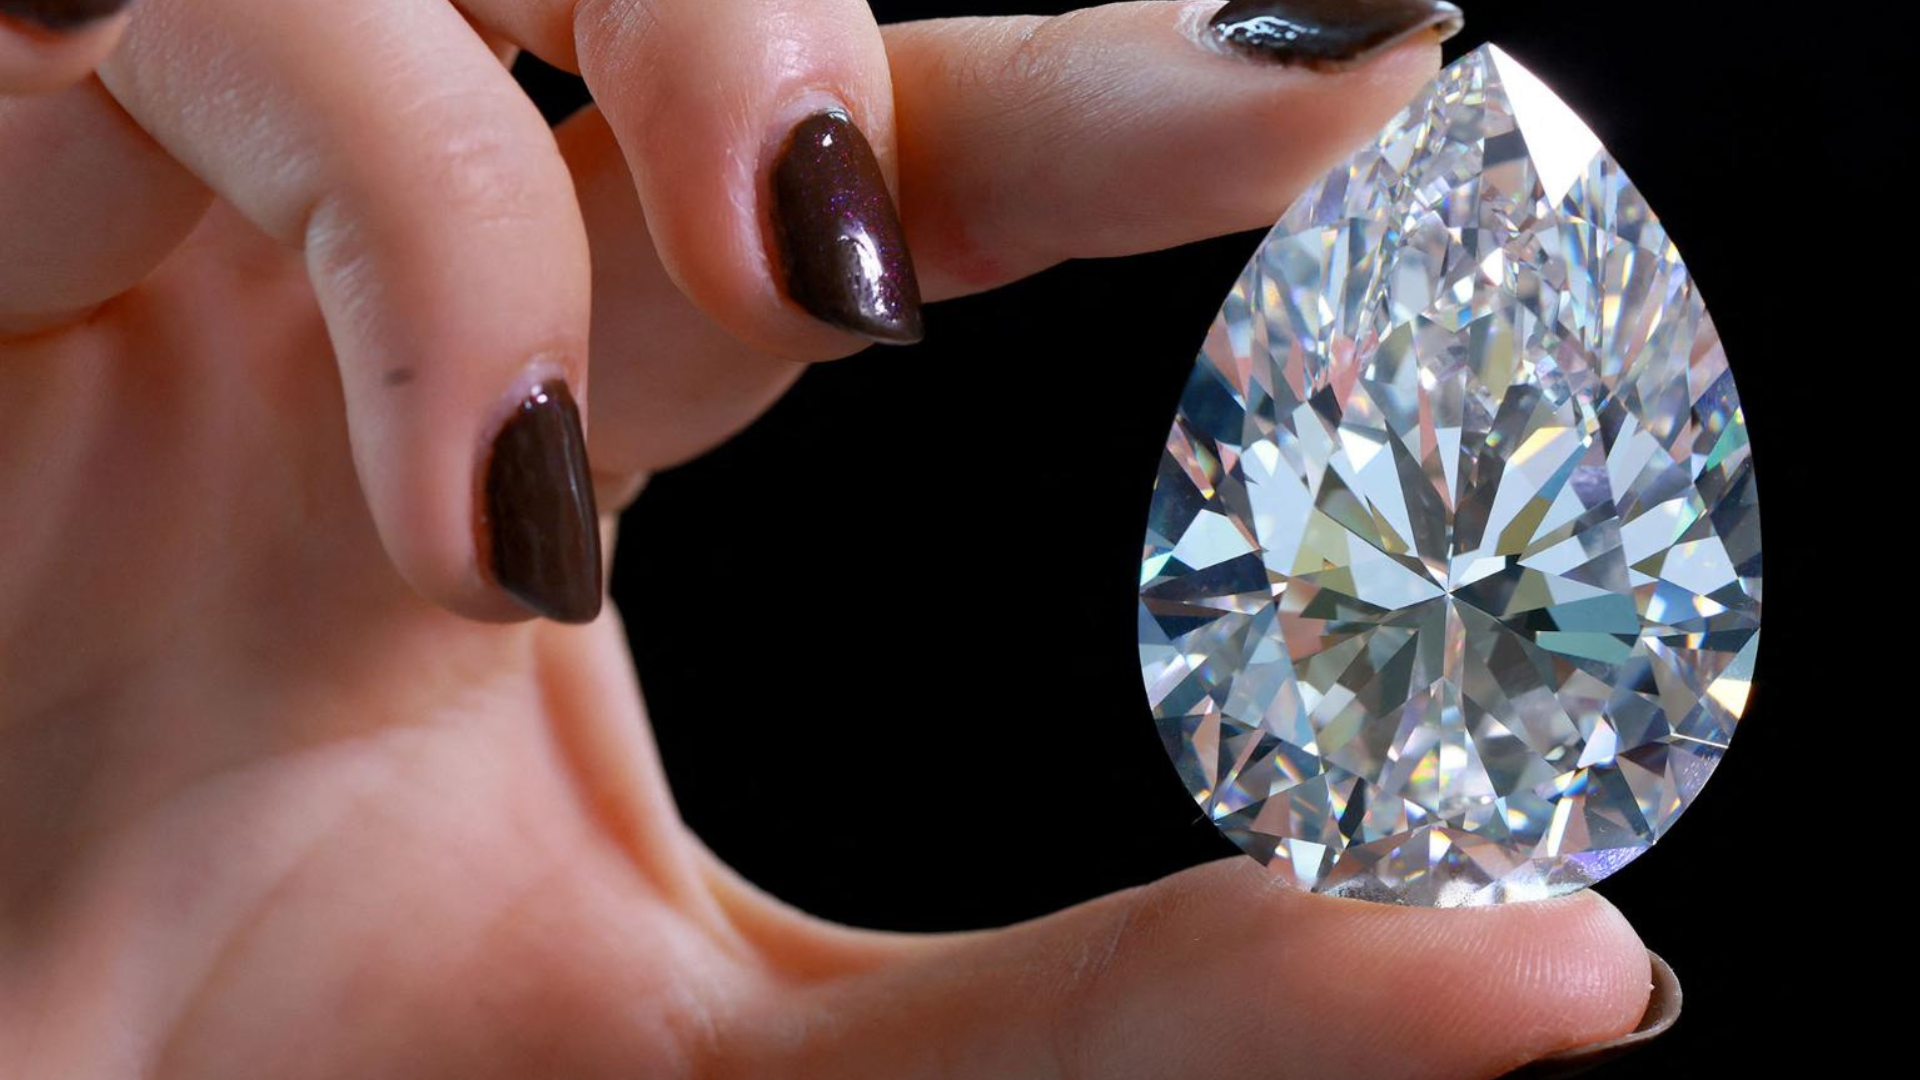 A person holding a diamond